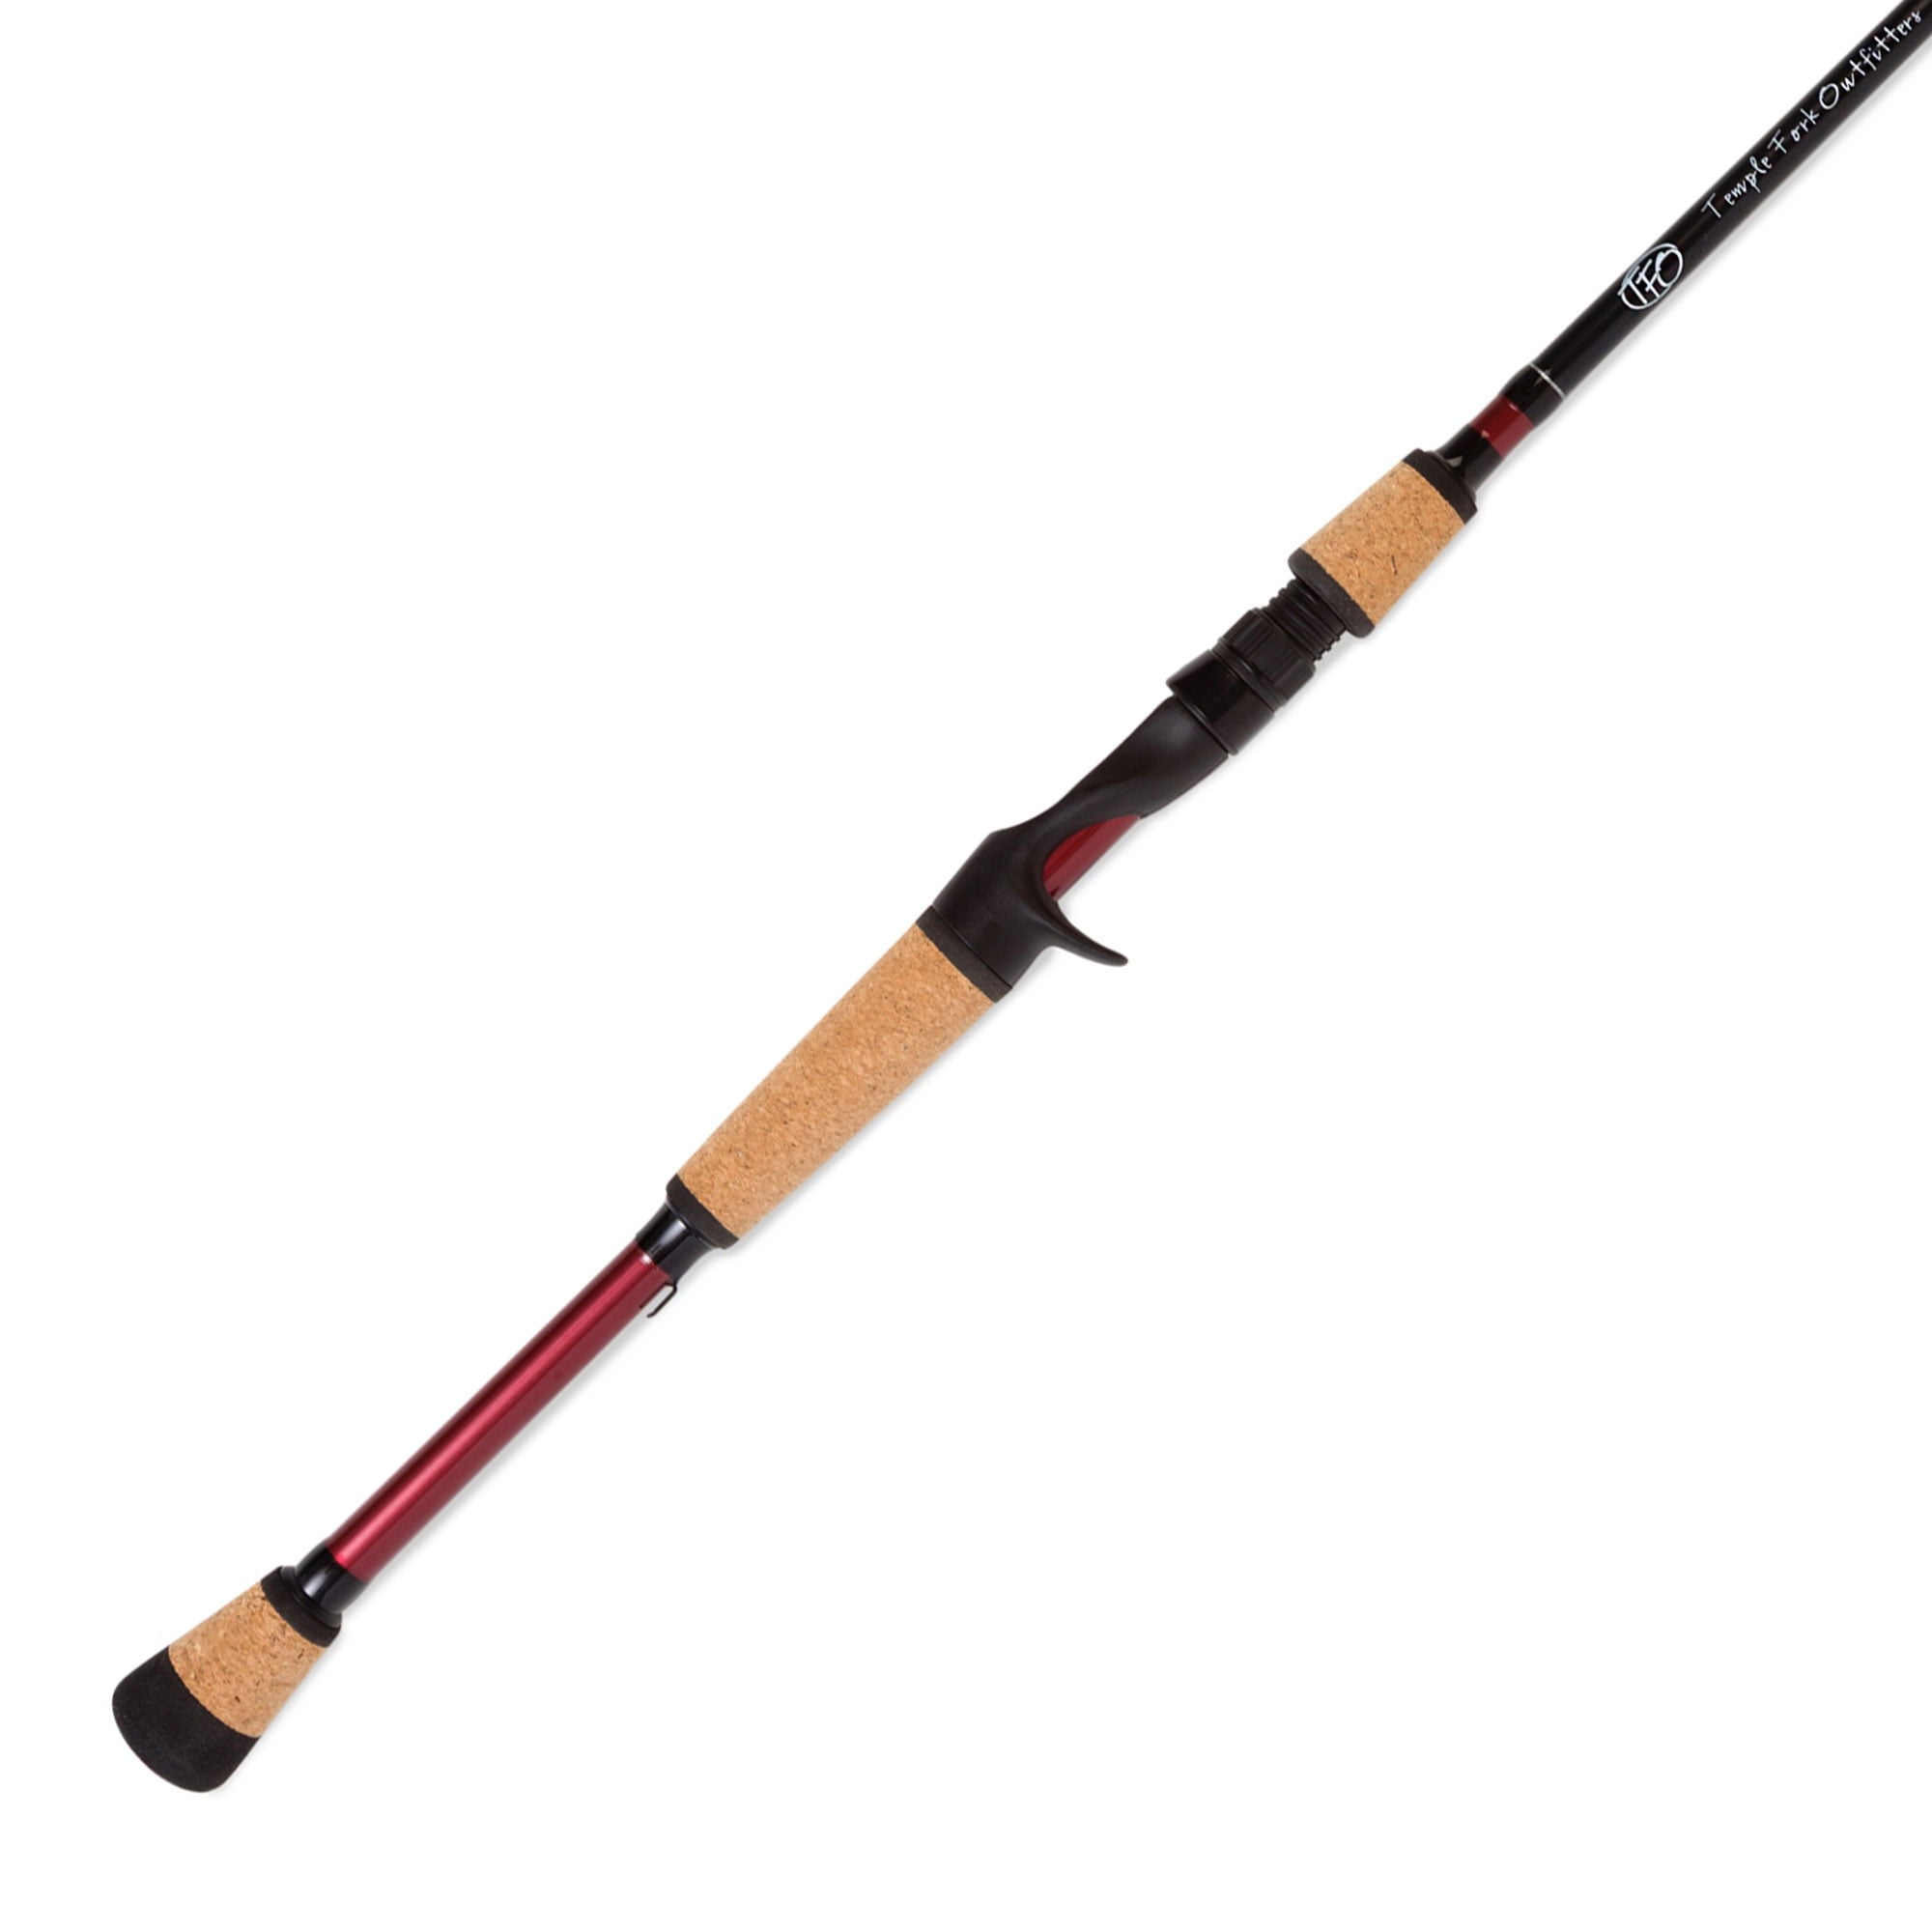 TFO Pro Series 7 Foot Angler Fishing Spinning Casting Rod, Medium